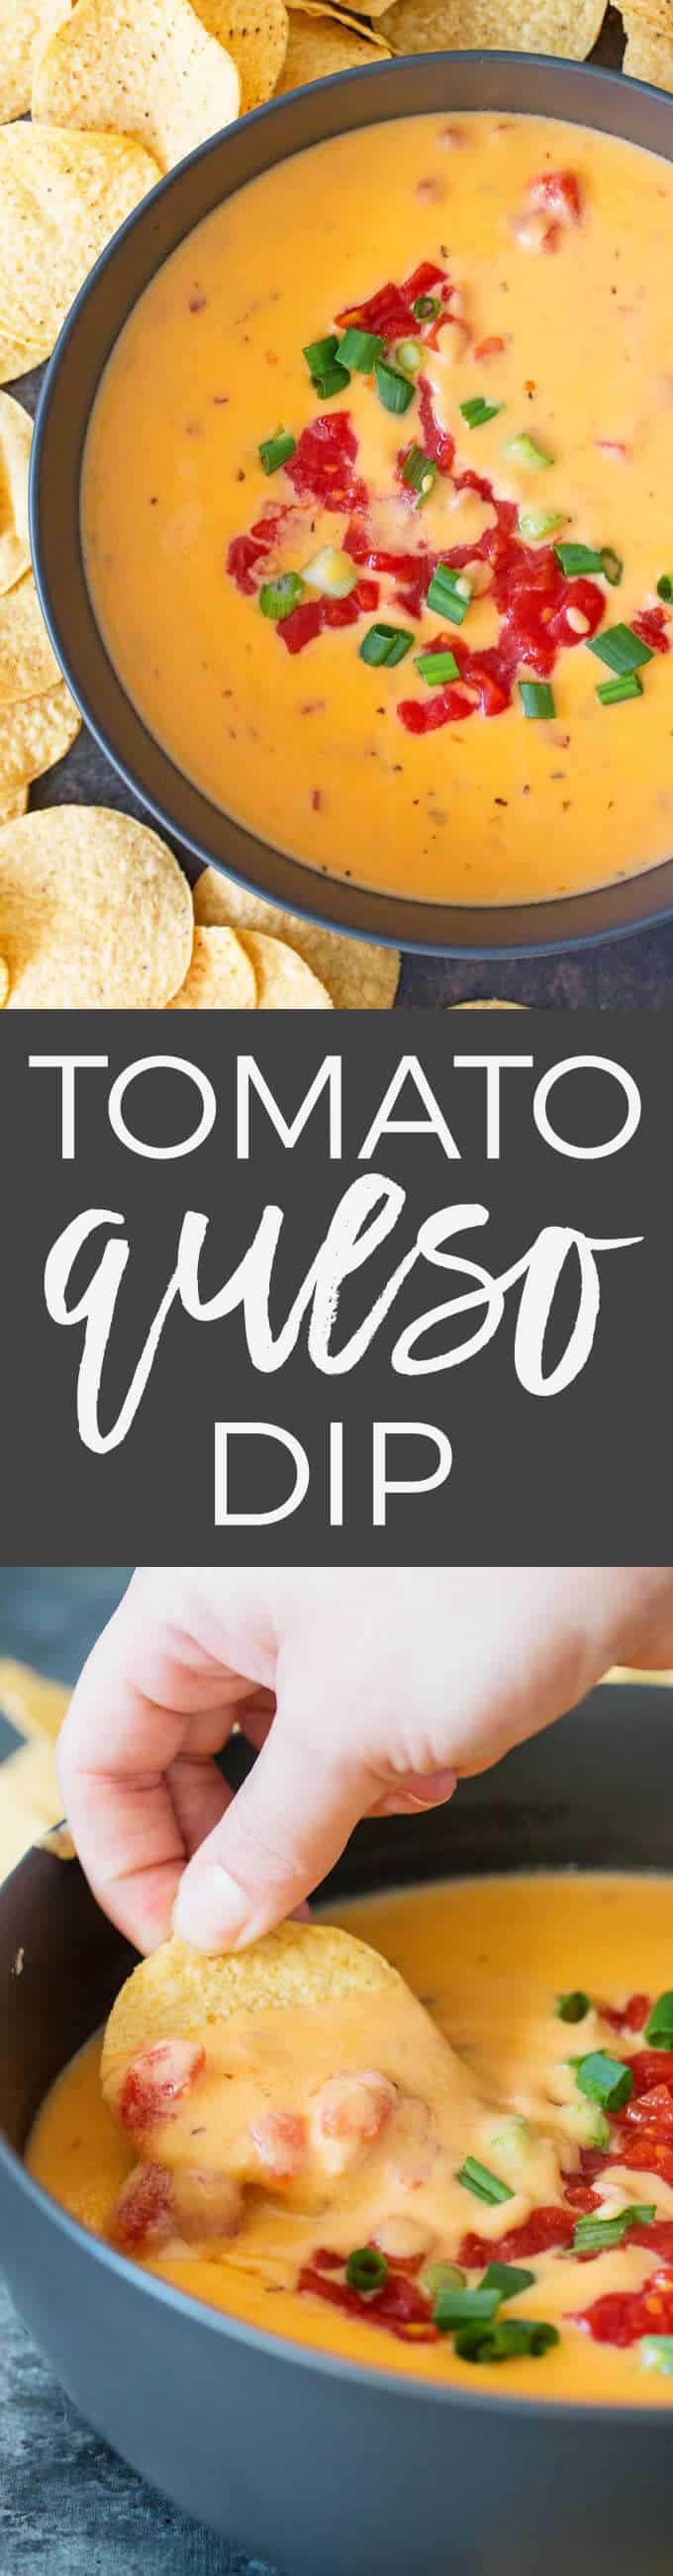 Tomato Queso Dip Recipe Pin